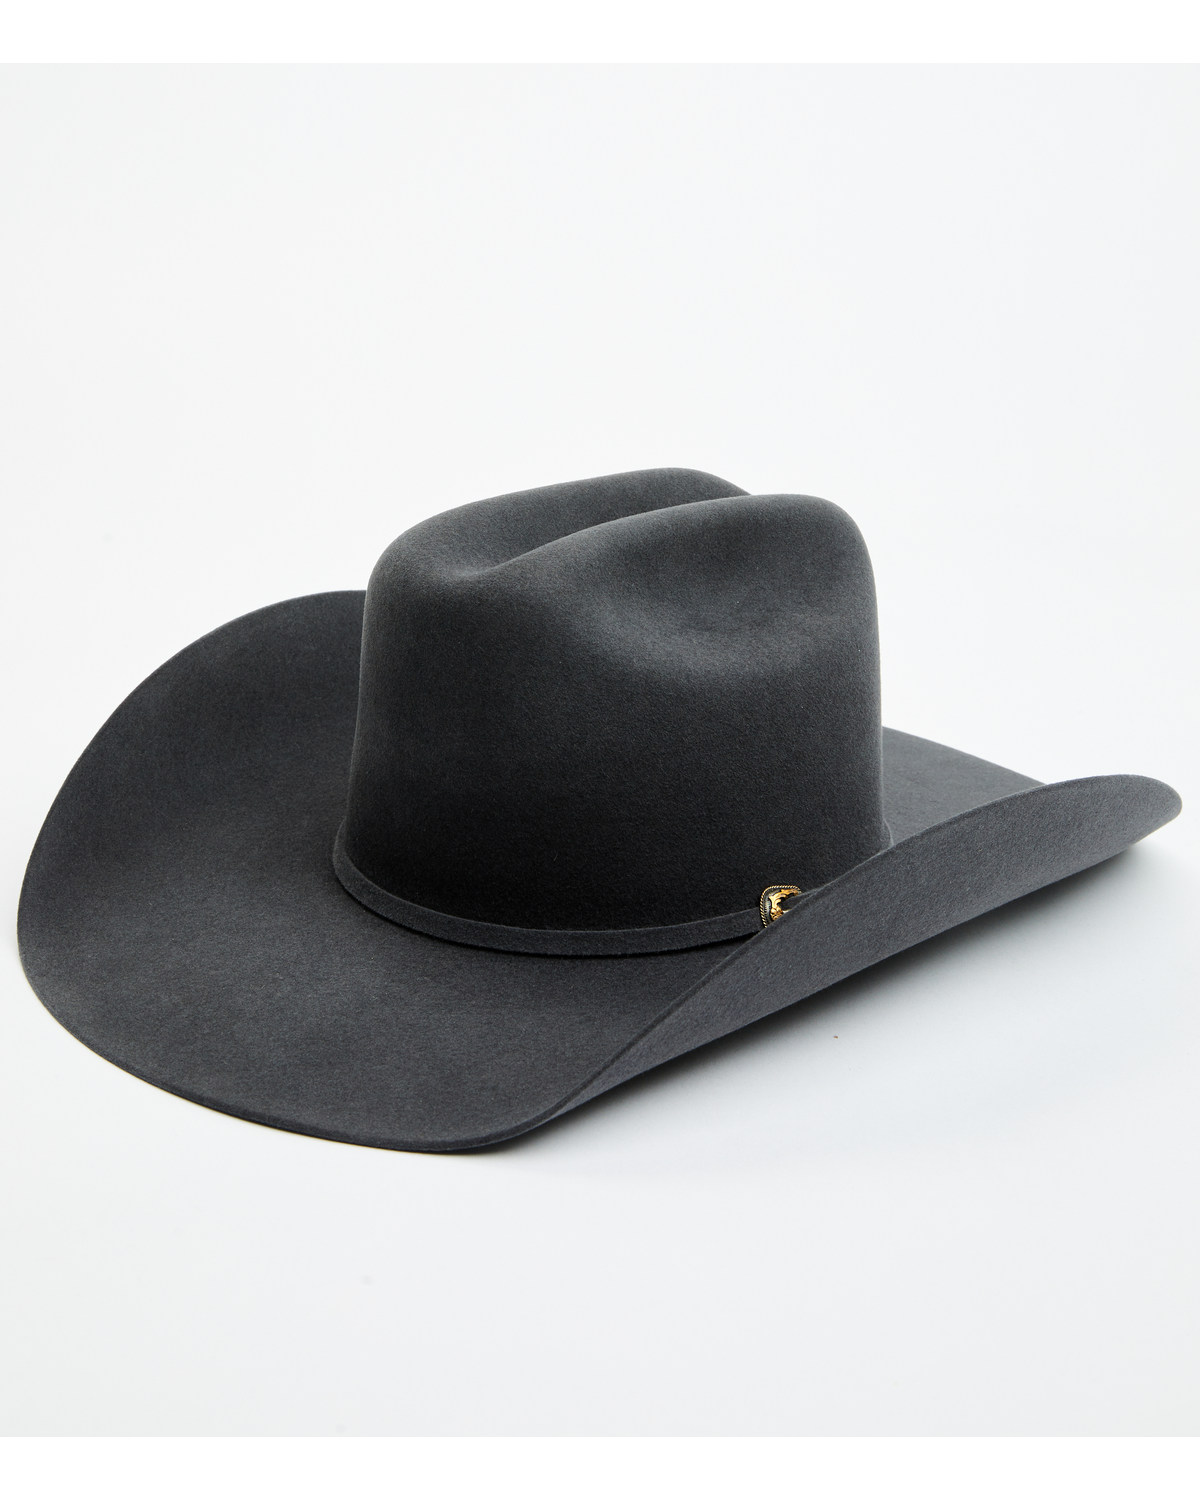 Cody James Black 1978® Waco 10X Felt Cowboy Hat